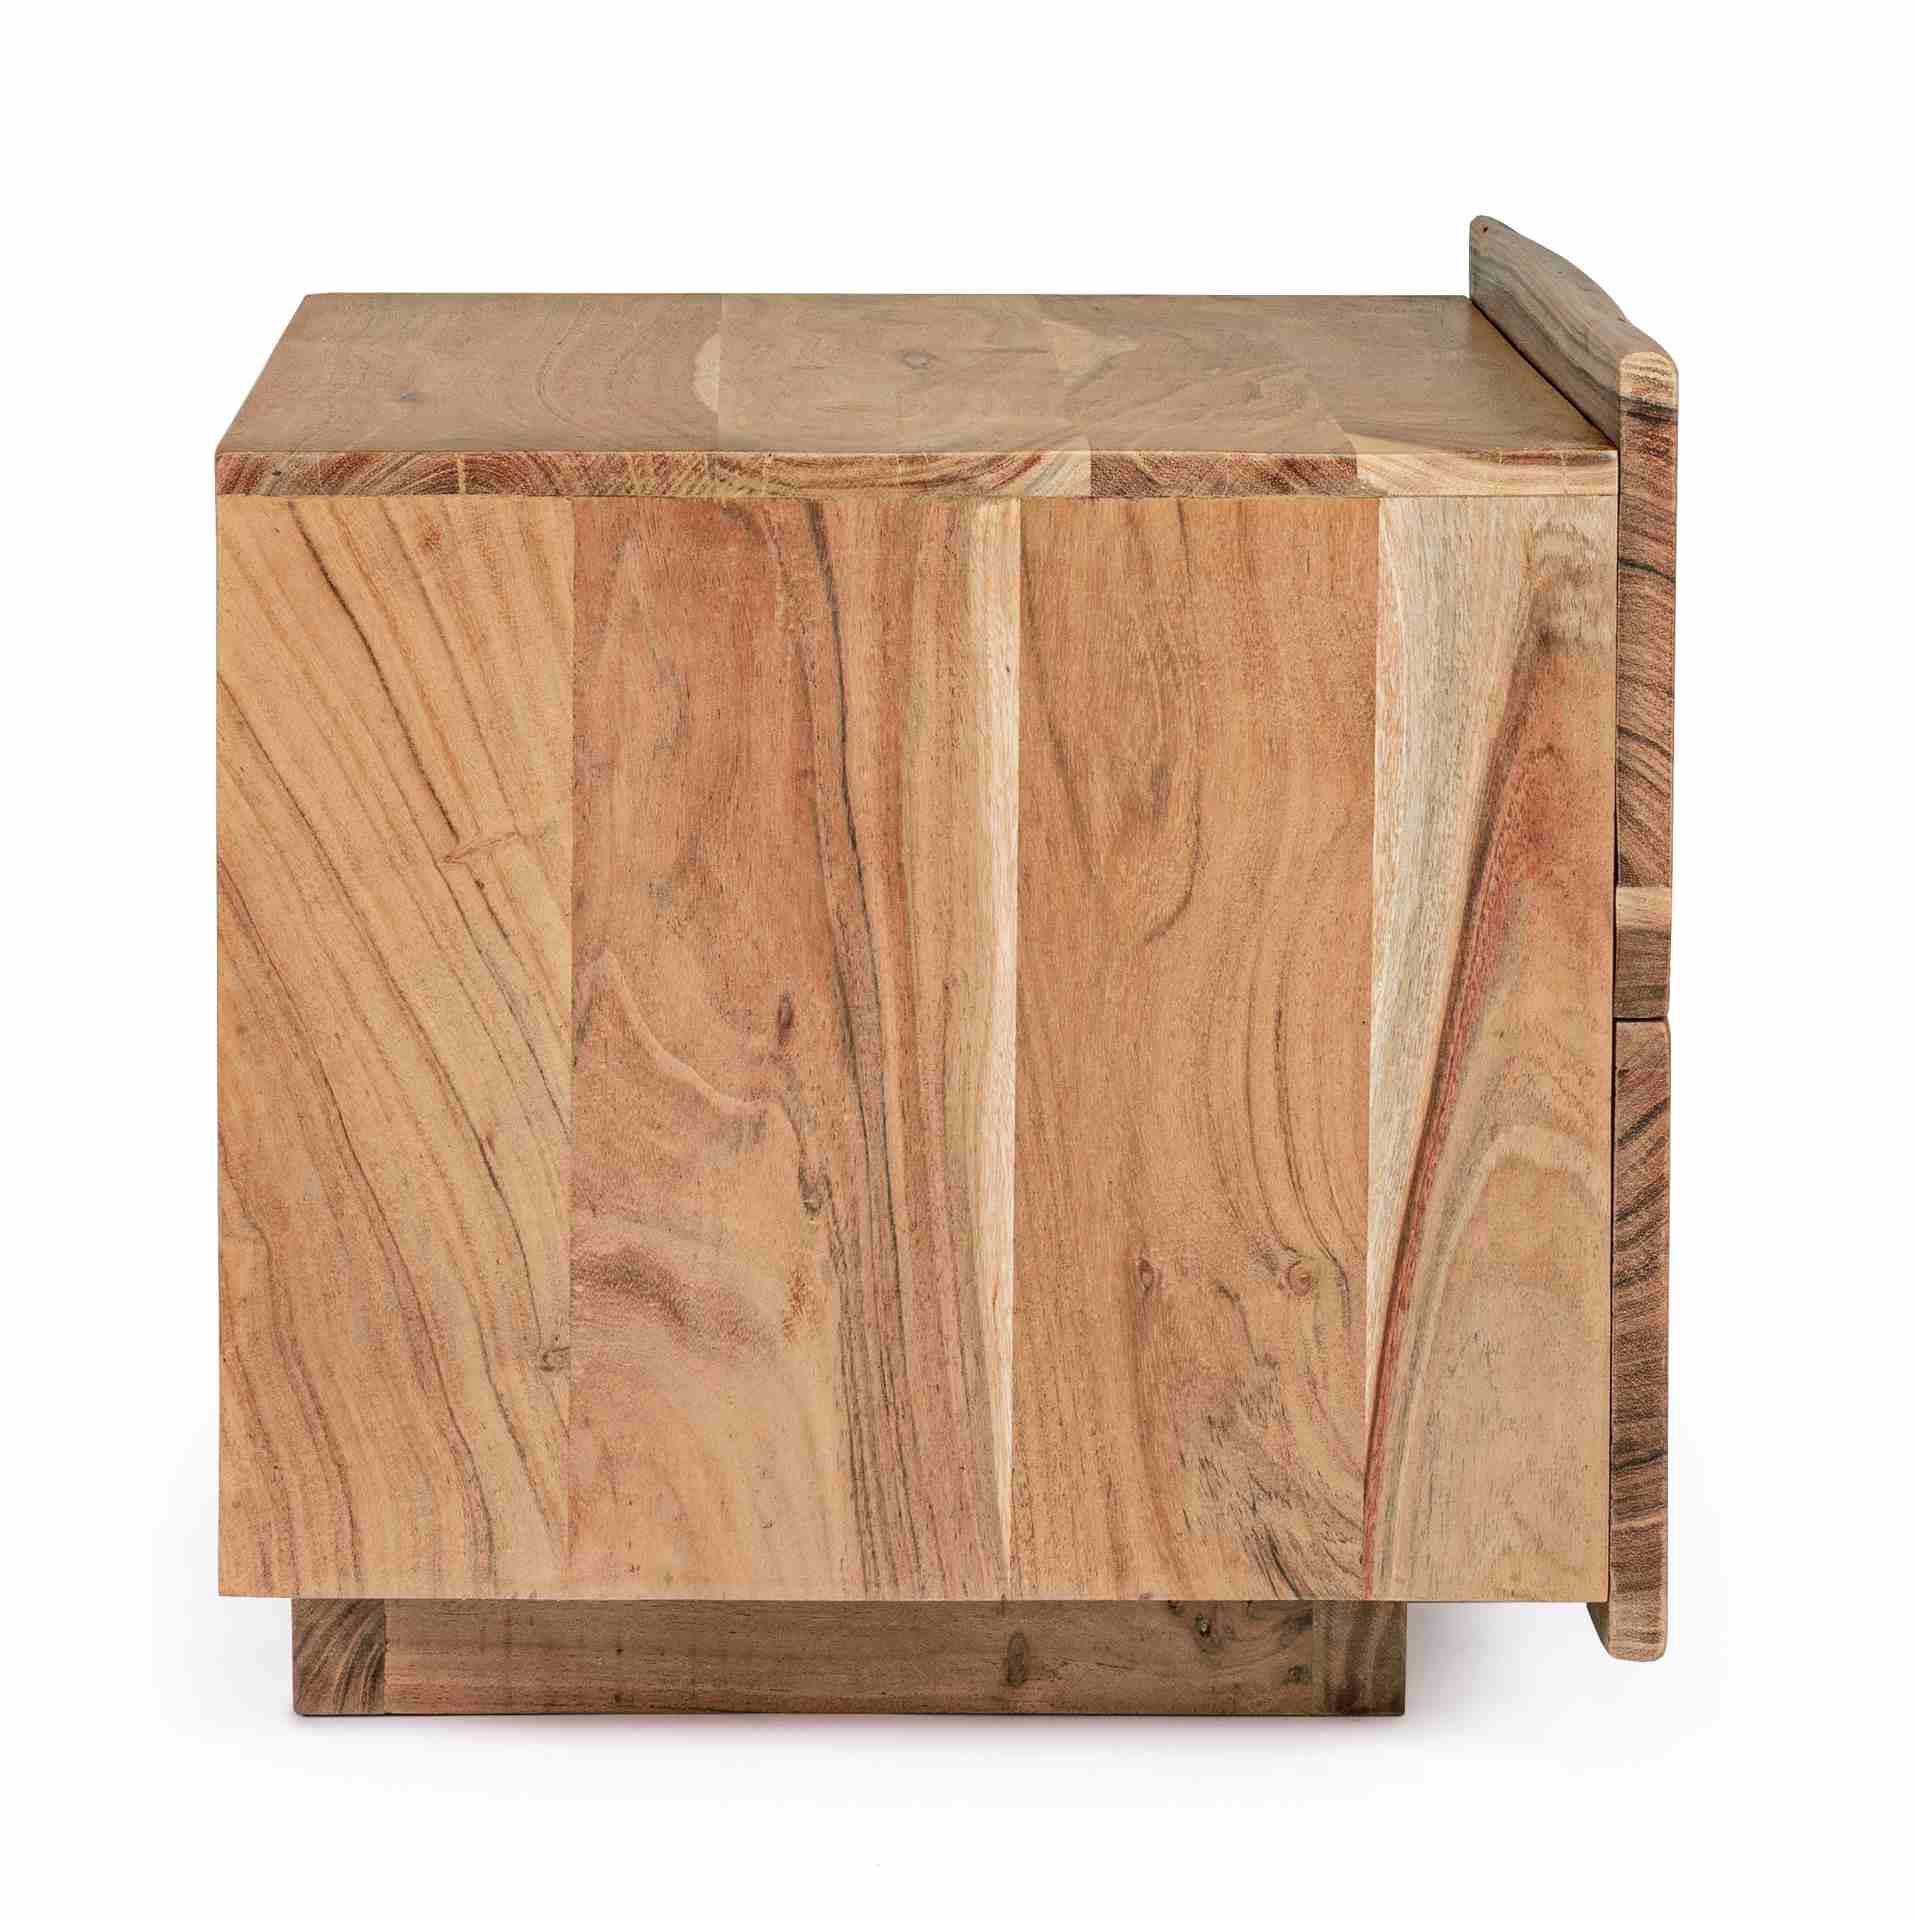 Der Nachttisch Aron überzeugt mit seinem klassischen Design. Gefertigt wurde er aus Akazienholz, welches einen natürlichen Farbton besitzt. Das Gestell ist auch aus Akazienholz. Der Nachttisch verfügt über zwei Schubladen. Die Breite beträgt 60 cm.